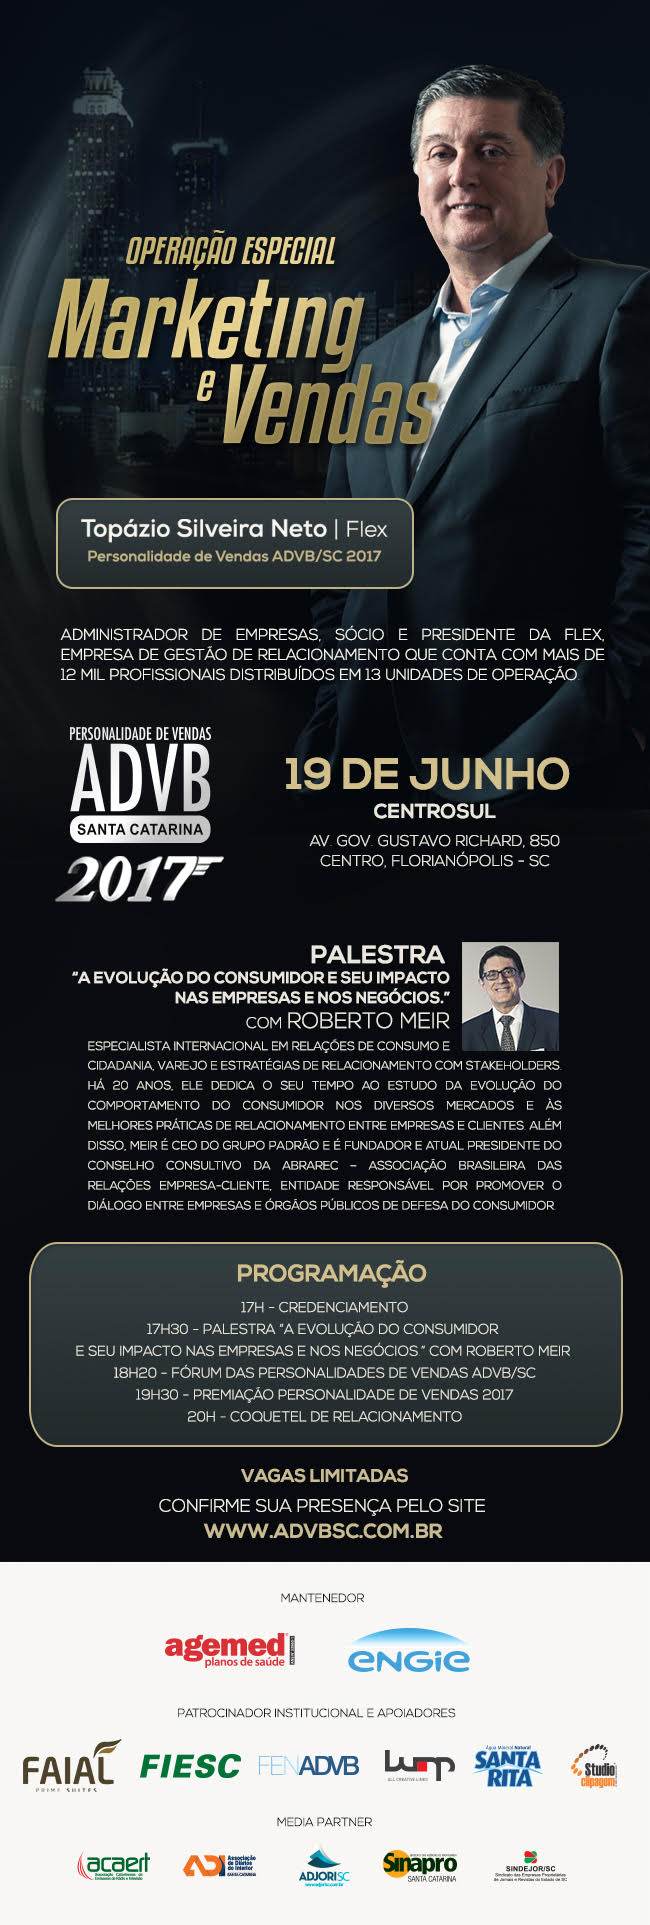 ADVB/SC realiza cerimônia para entrega do Prêmio Personalidade de Vendas 2017